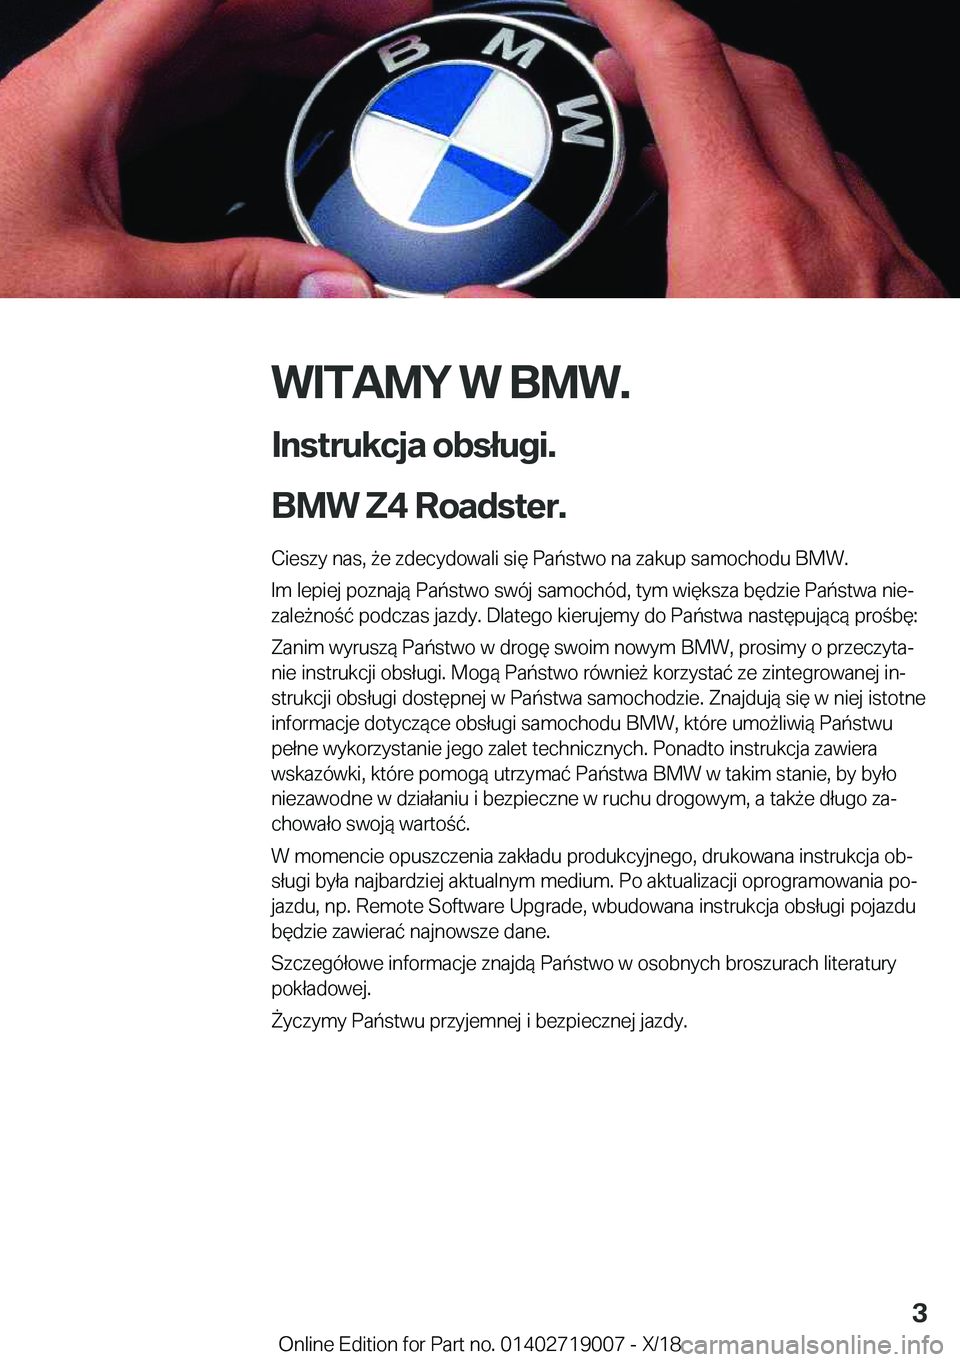 BMW Z4 2019  Instrukcja obsługi (in Polish) �W�I�T�A�M�Y��W��B�M�W�.
�I�n�s�t�r�u�k�c�j�a��o�b�s�ł�u�g�i�.
�B�M�W��Z�4��R�o�a�d�s�t�e�r�. �C�i�e�s�z�y��n�a�s�,�9�e��z�d�e�c�y�d�o�w�a�l�i��s�i�